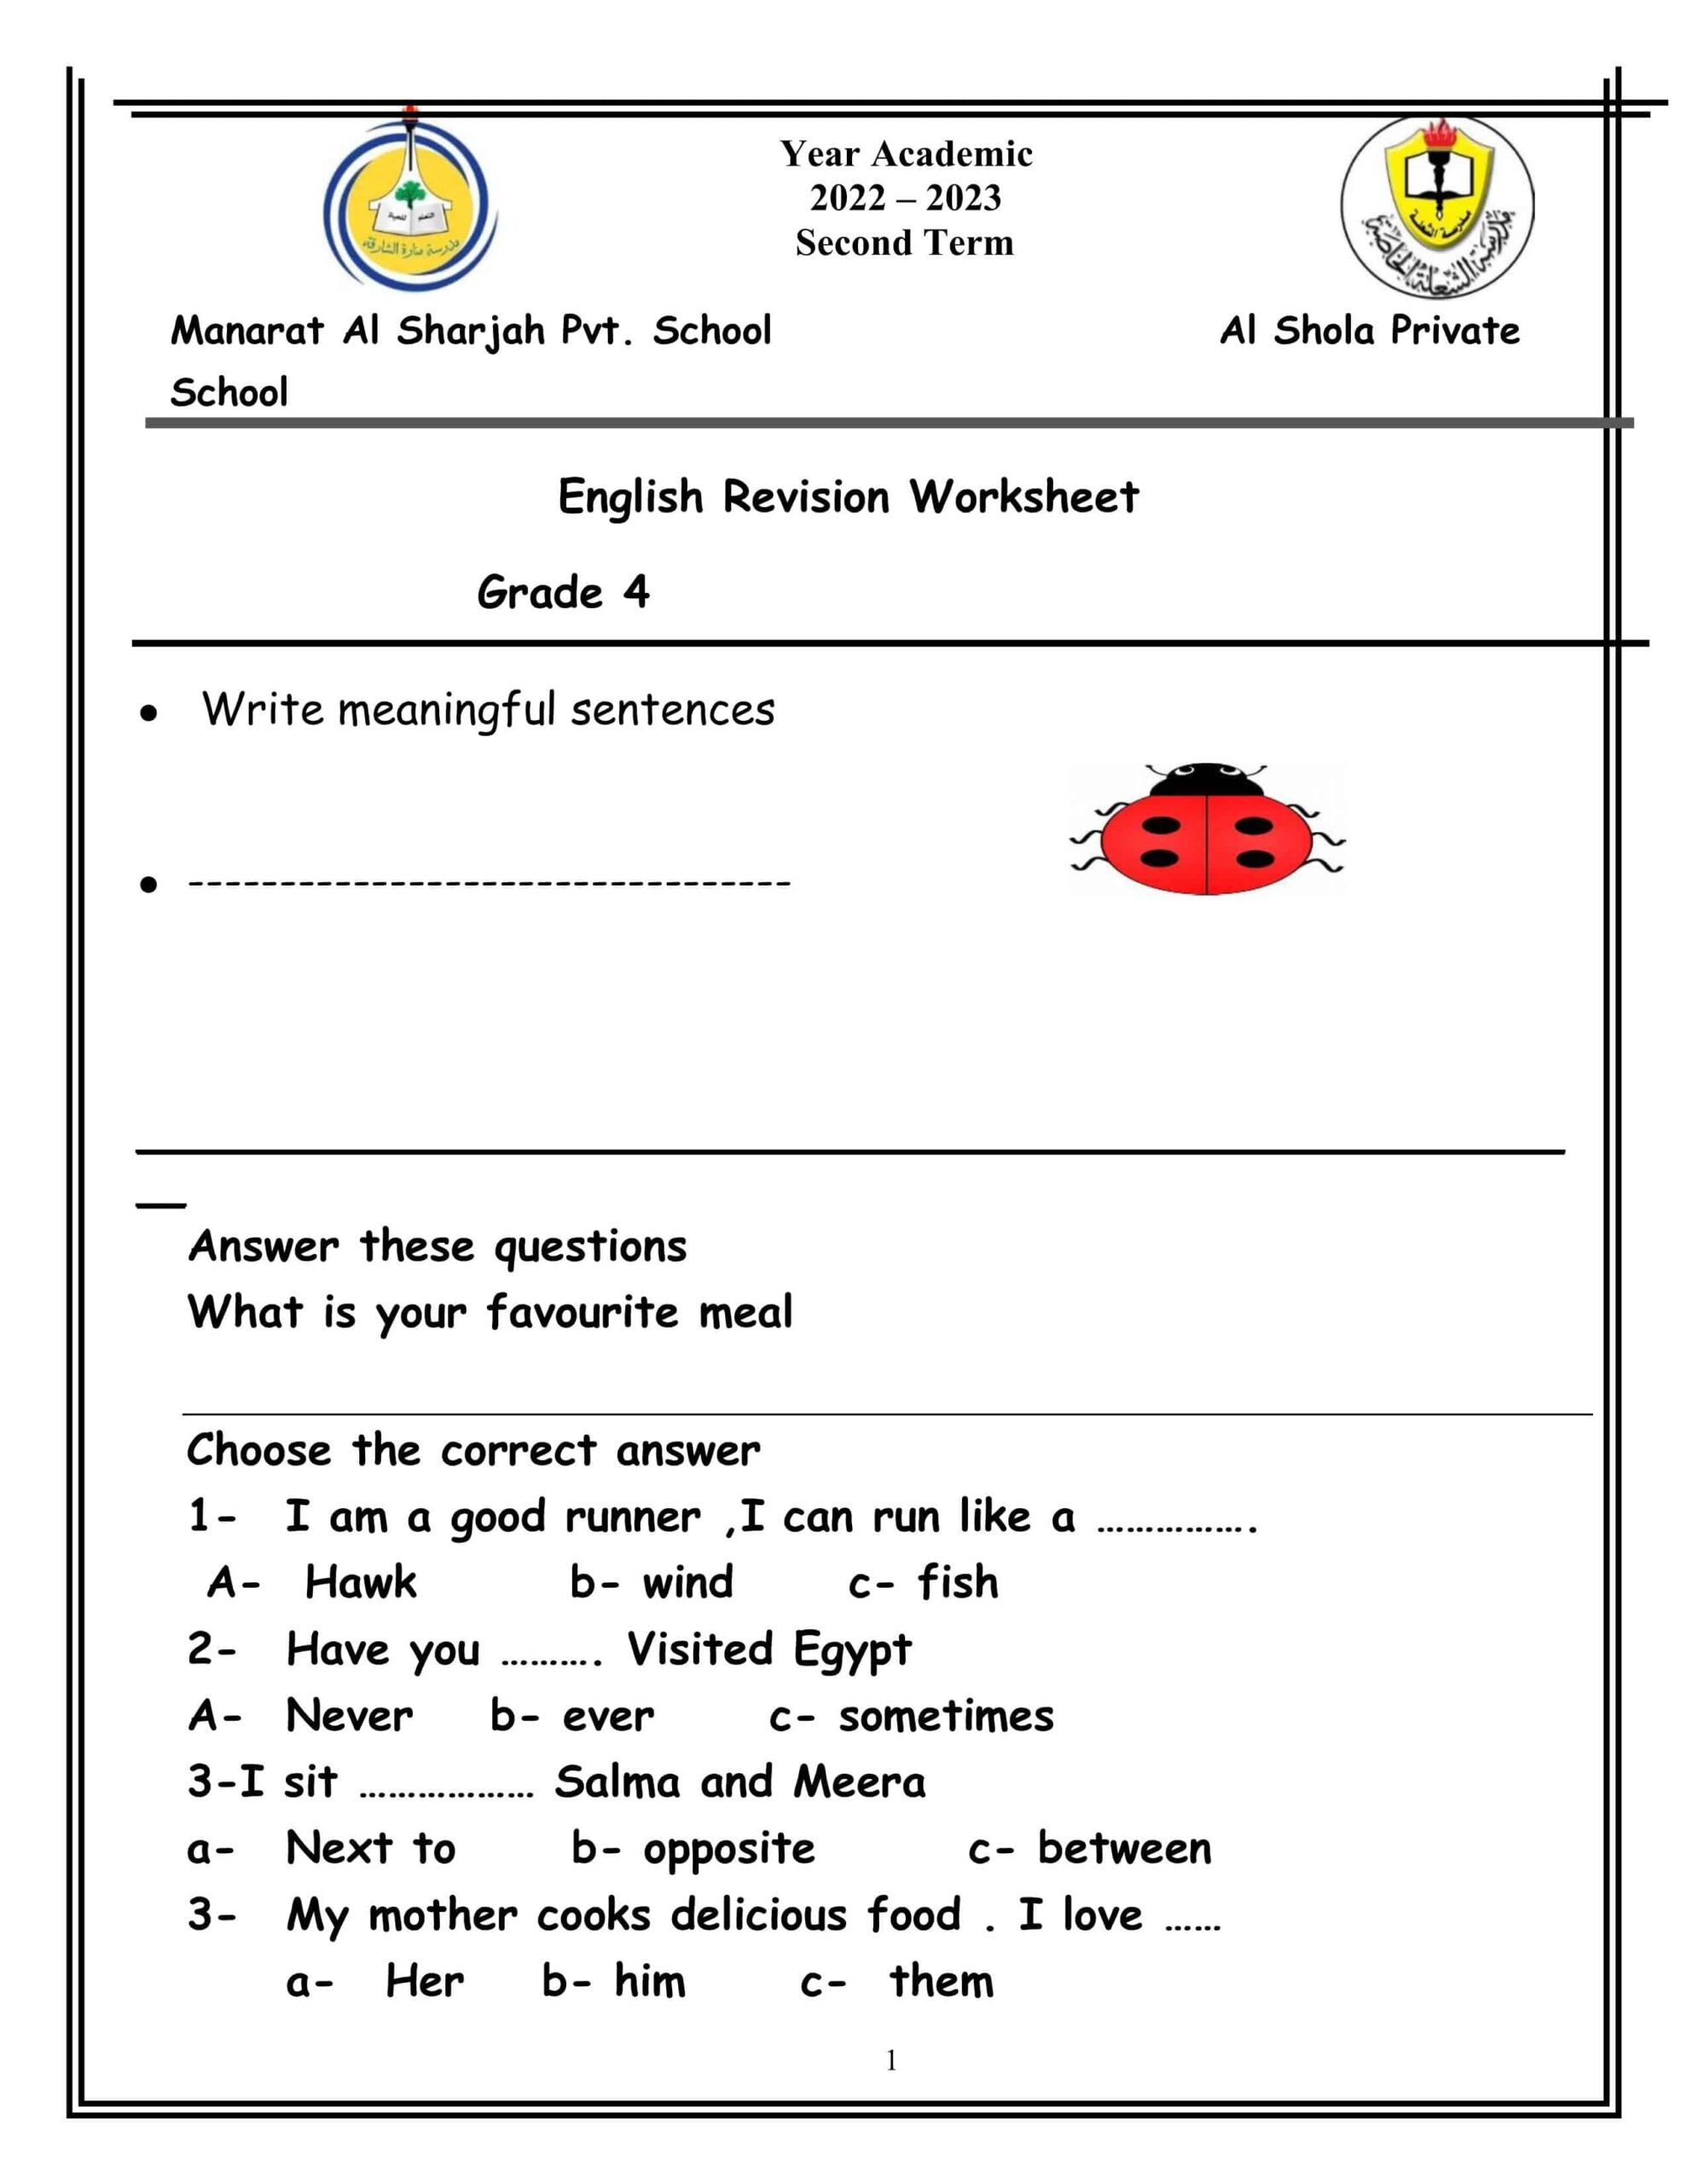 ورقة عمل Revision Worksheet اللغة الإنجليزية الصف الرابع